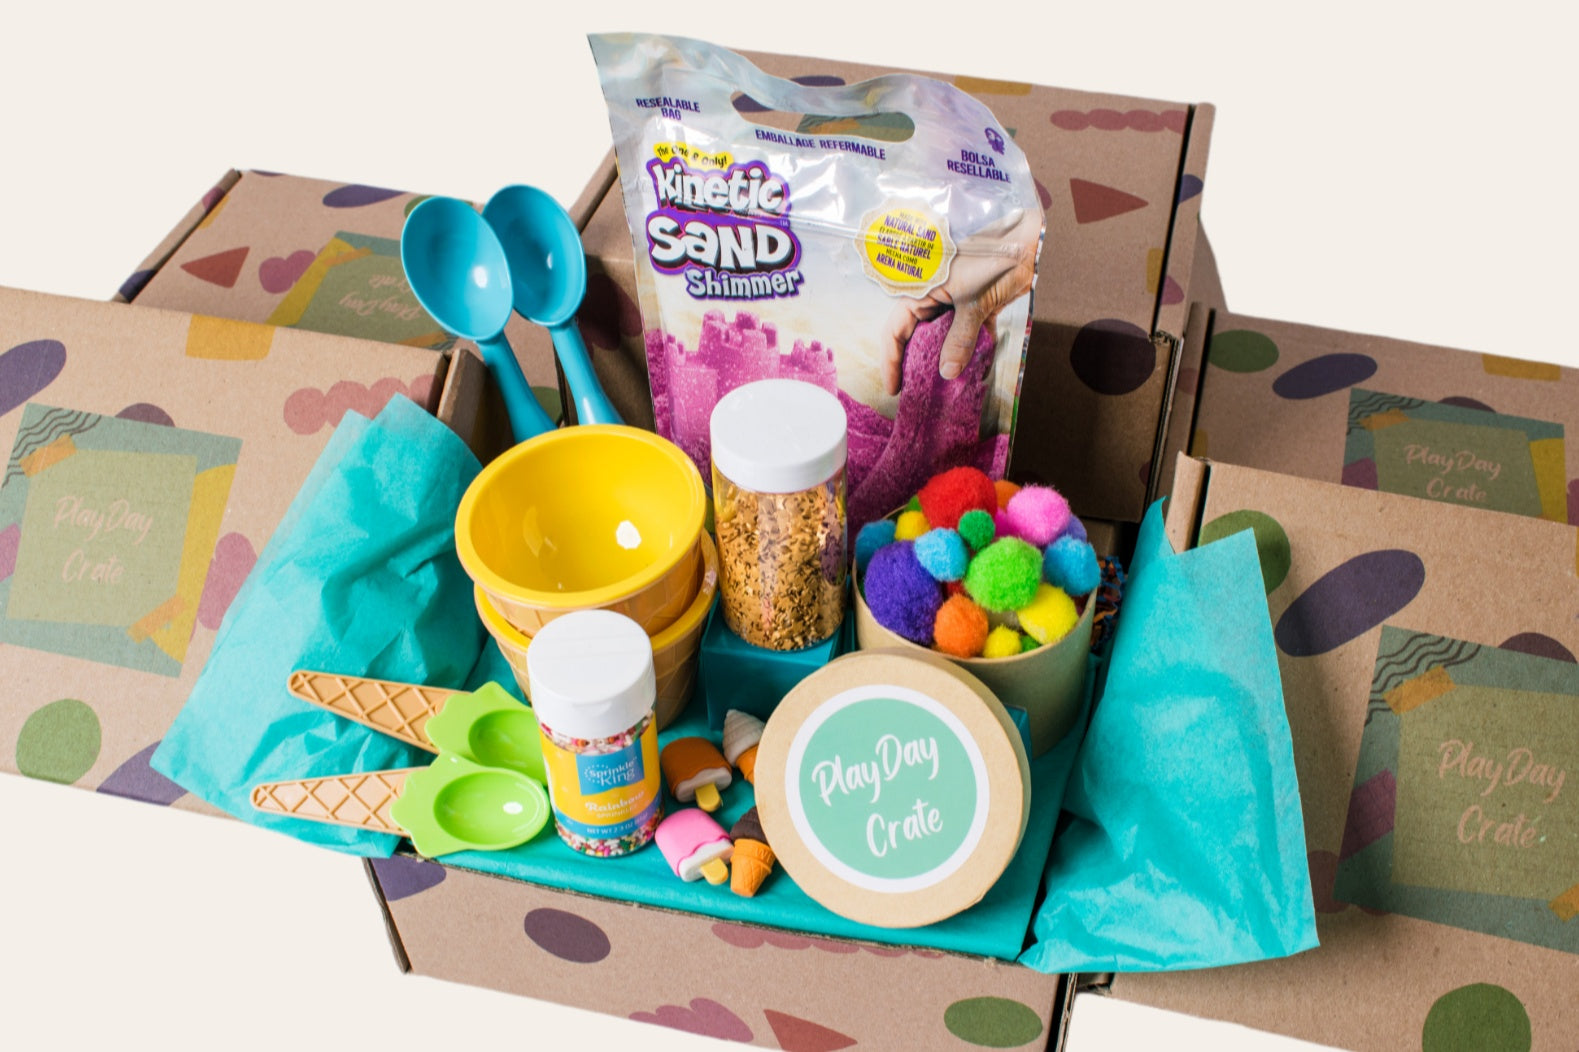 Tackle Box Kid Gift Basket Fun Fishing Gift Basket Candy Cookies #1 